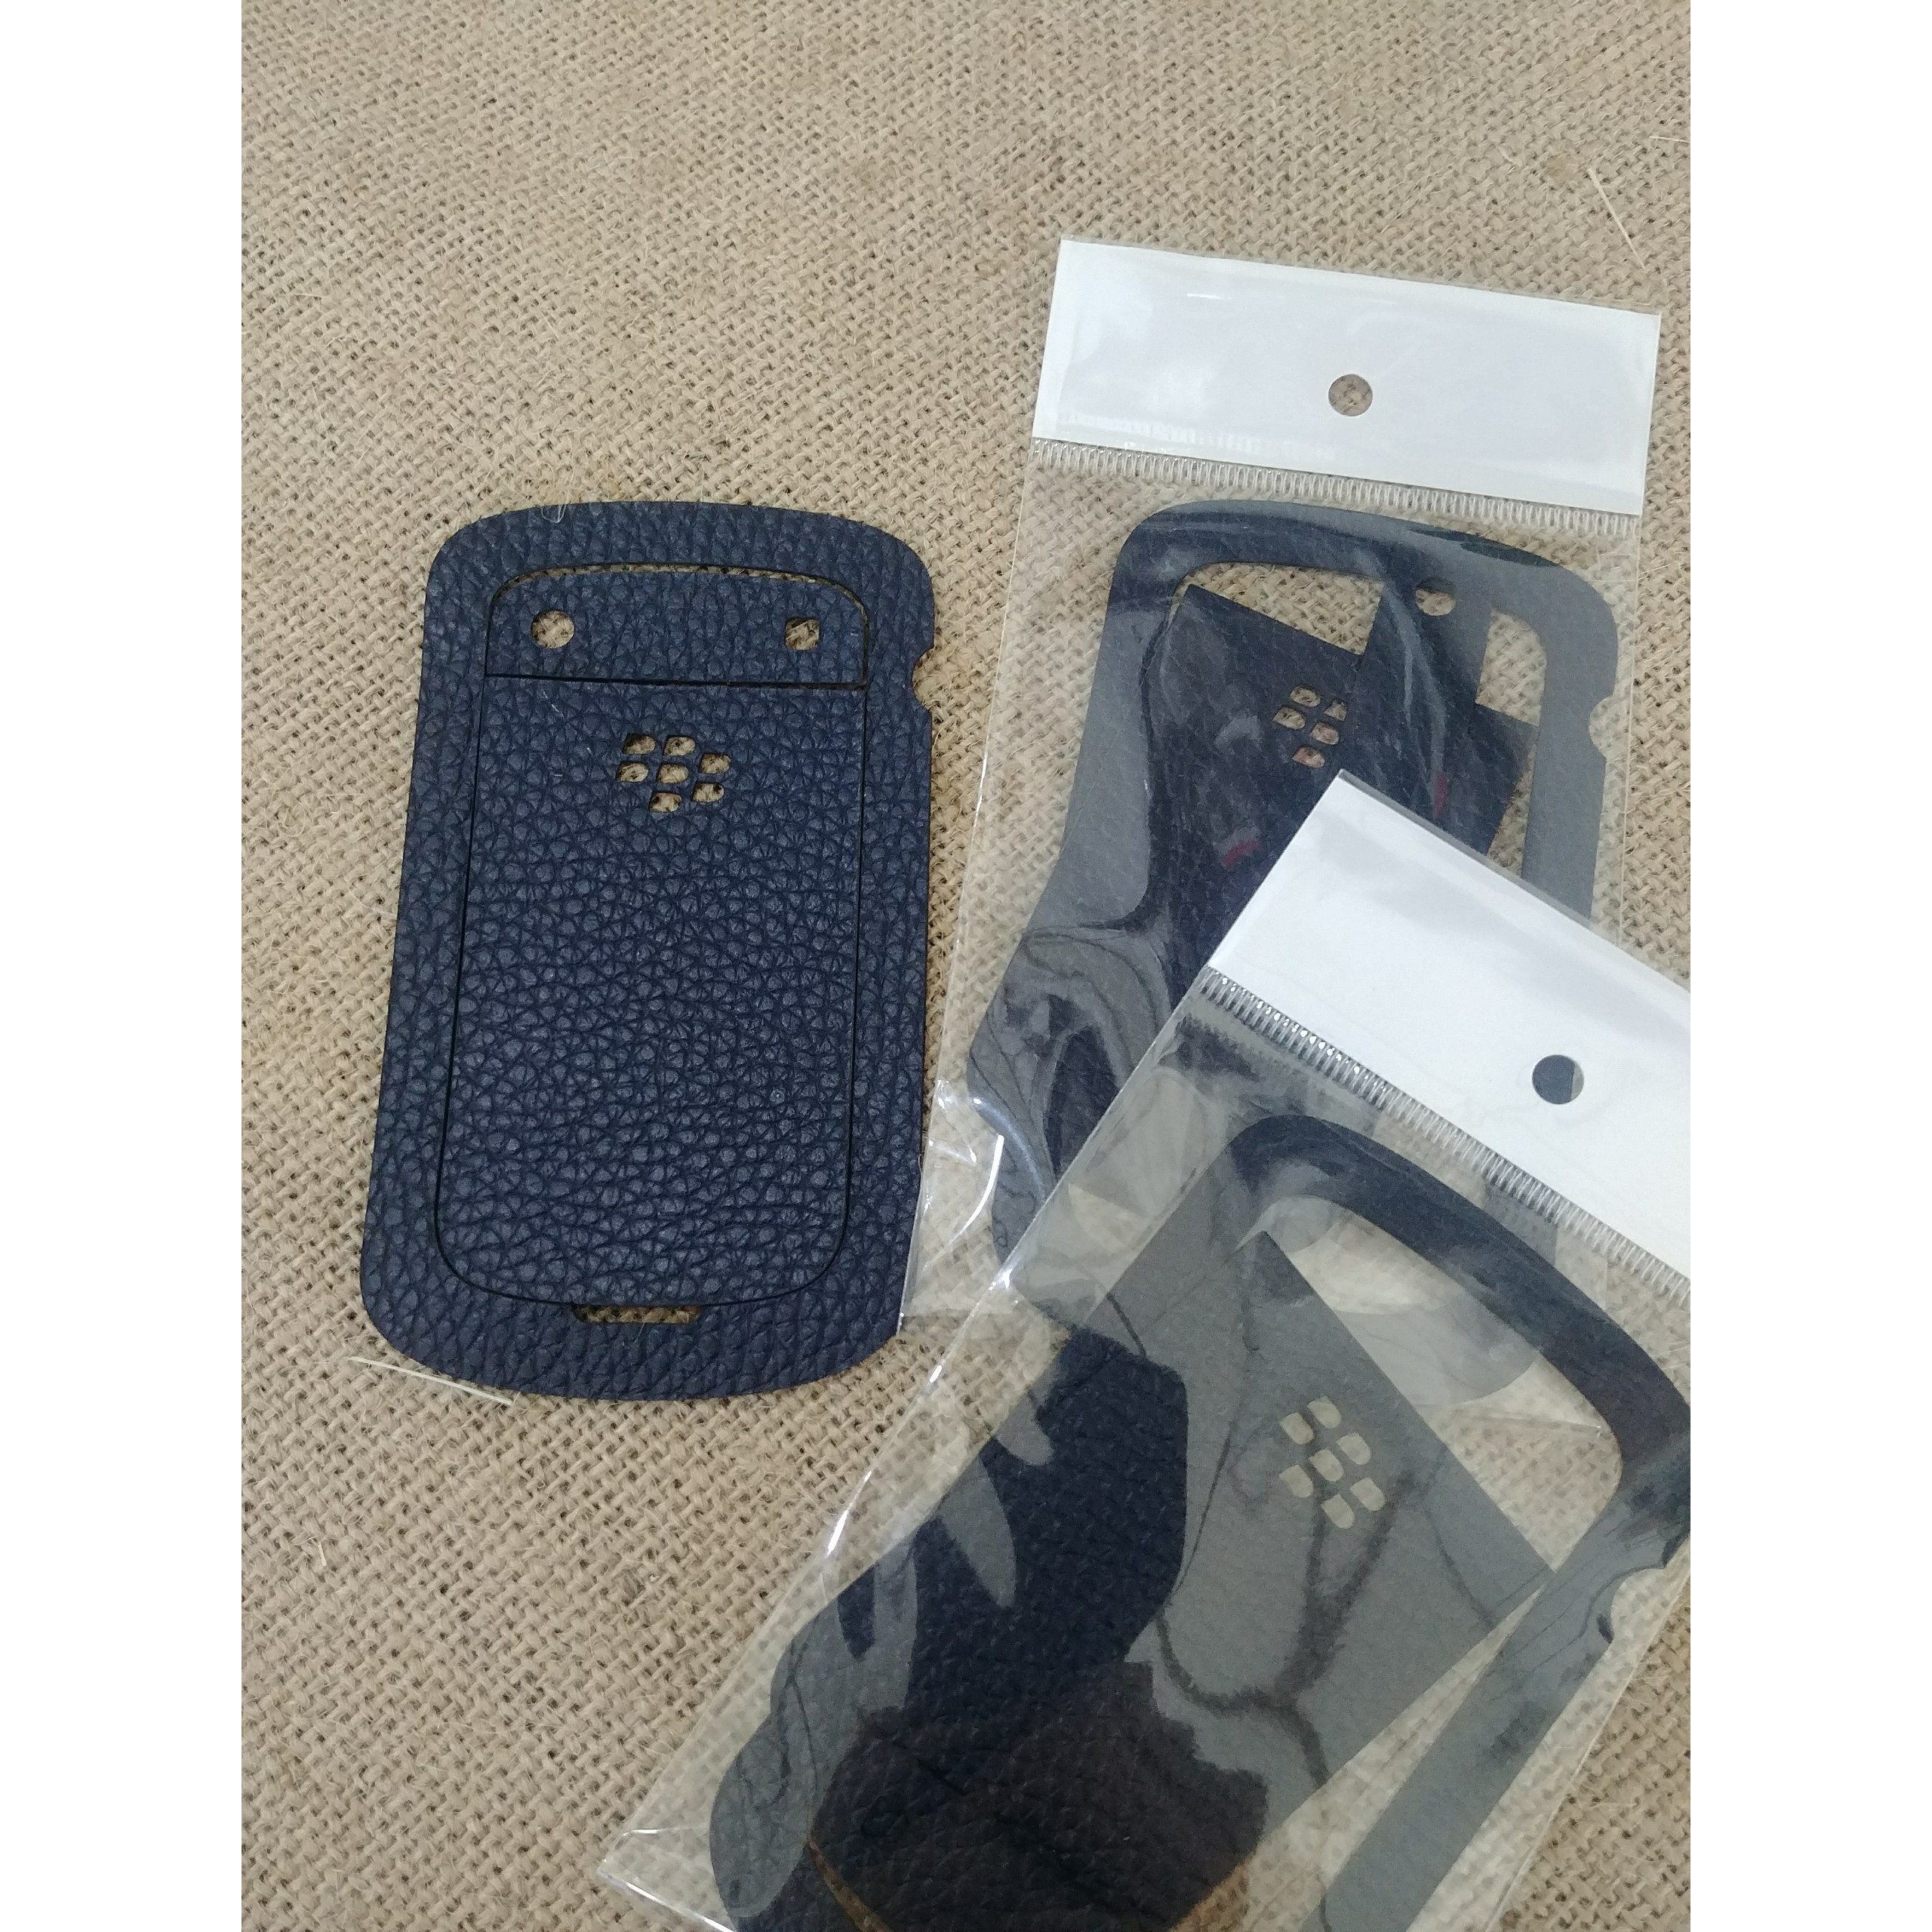 Dán Da Lưng Da Thật  Dành Cho Điện Thoại Blackberry Bold 9900/9930 - Dán Da Màu Đen Bảo Vệ Mặt Lưng